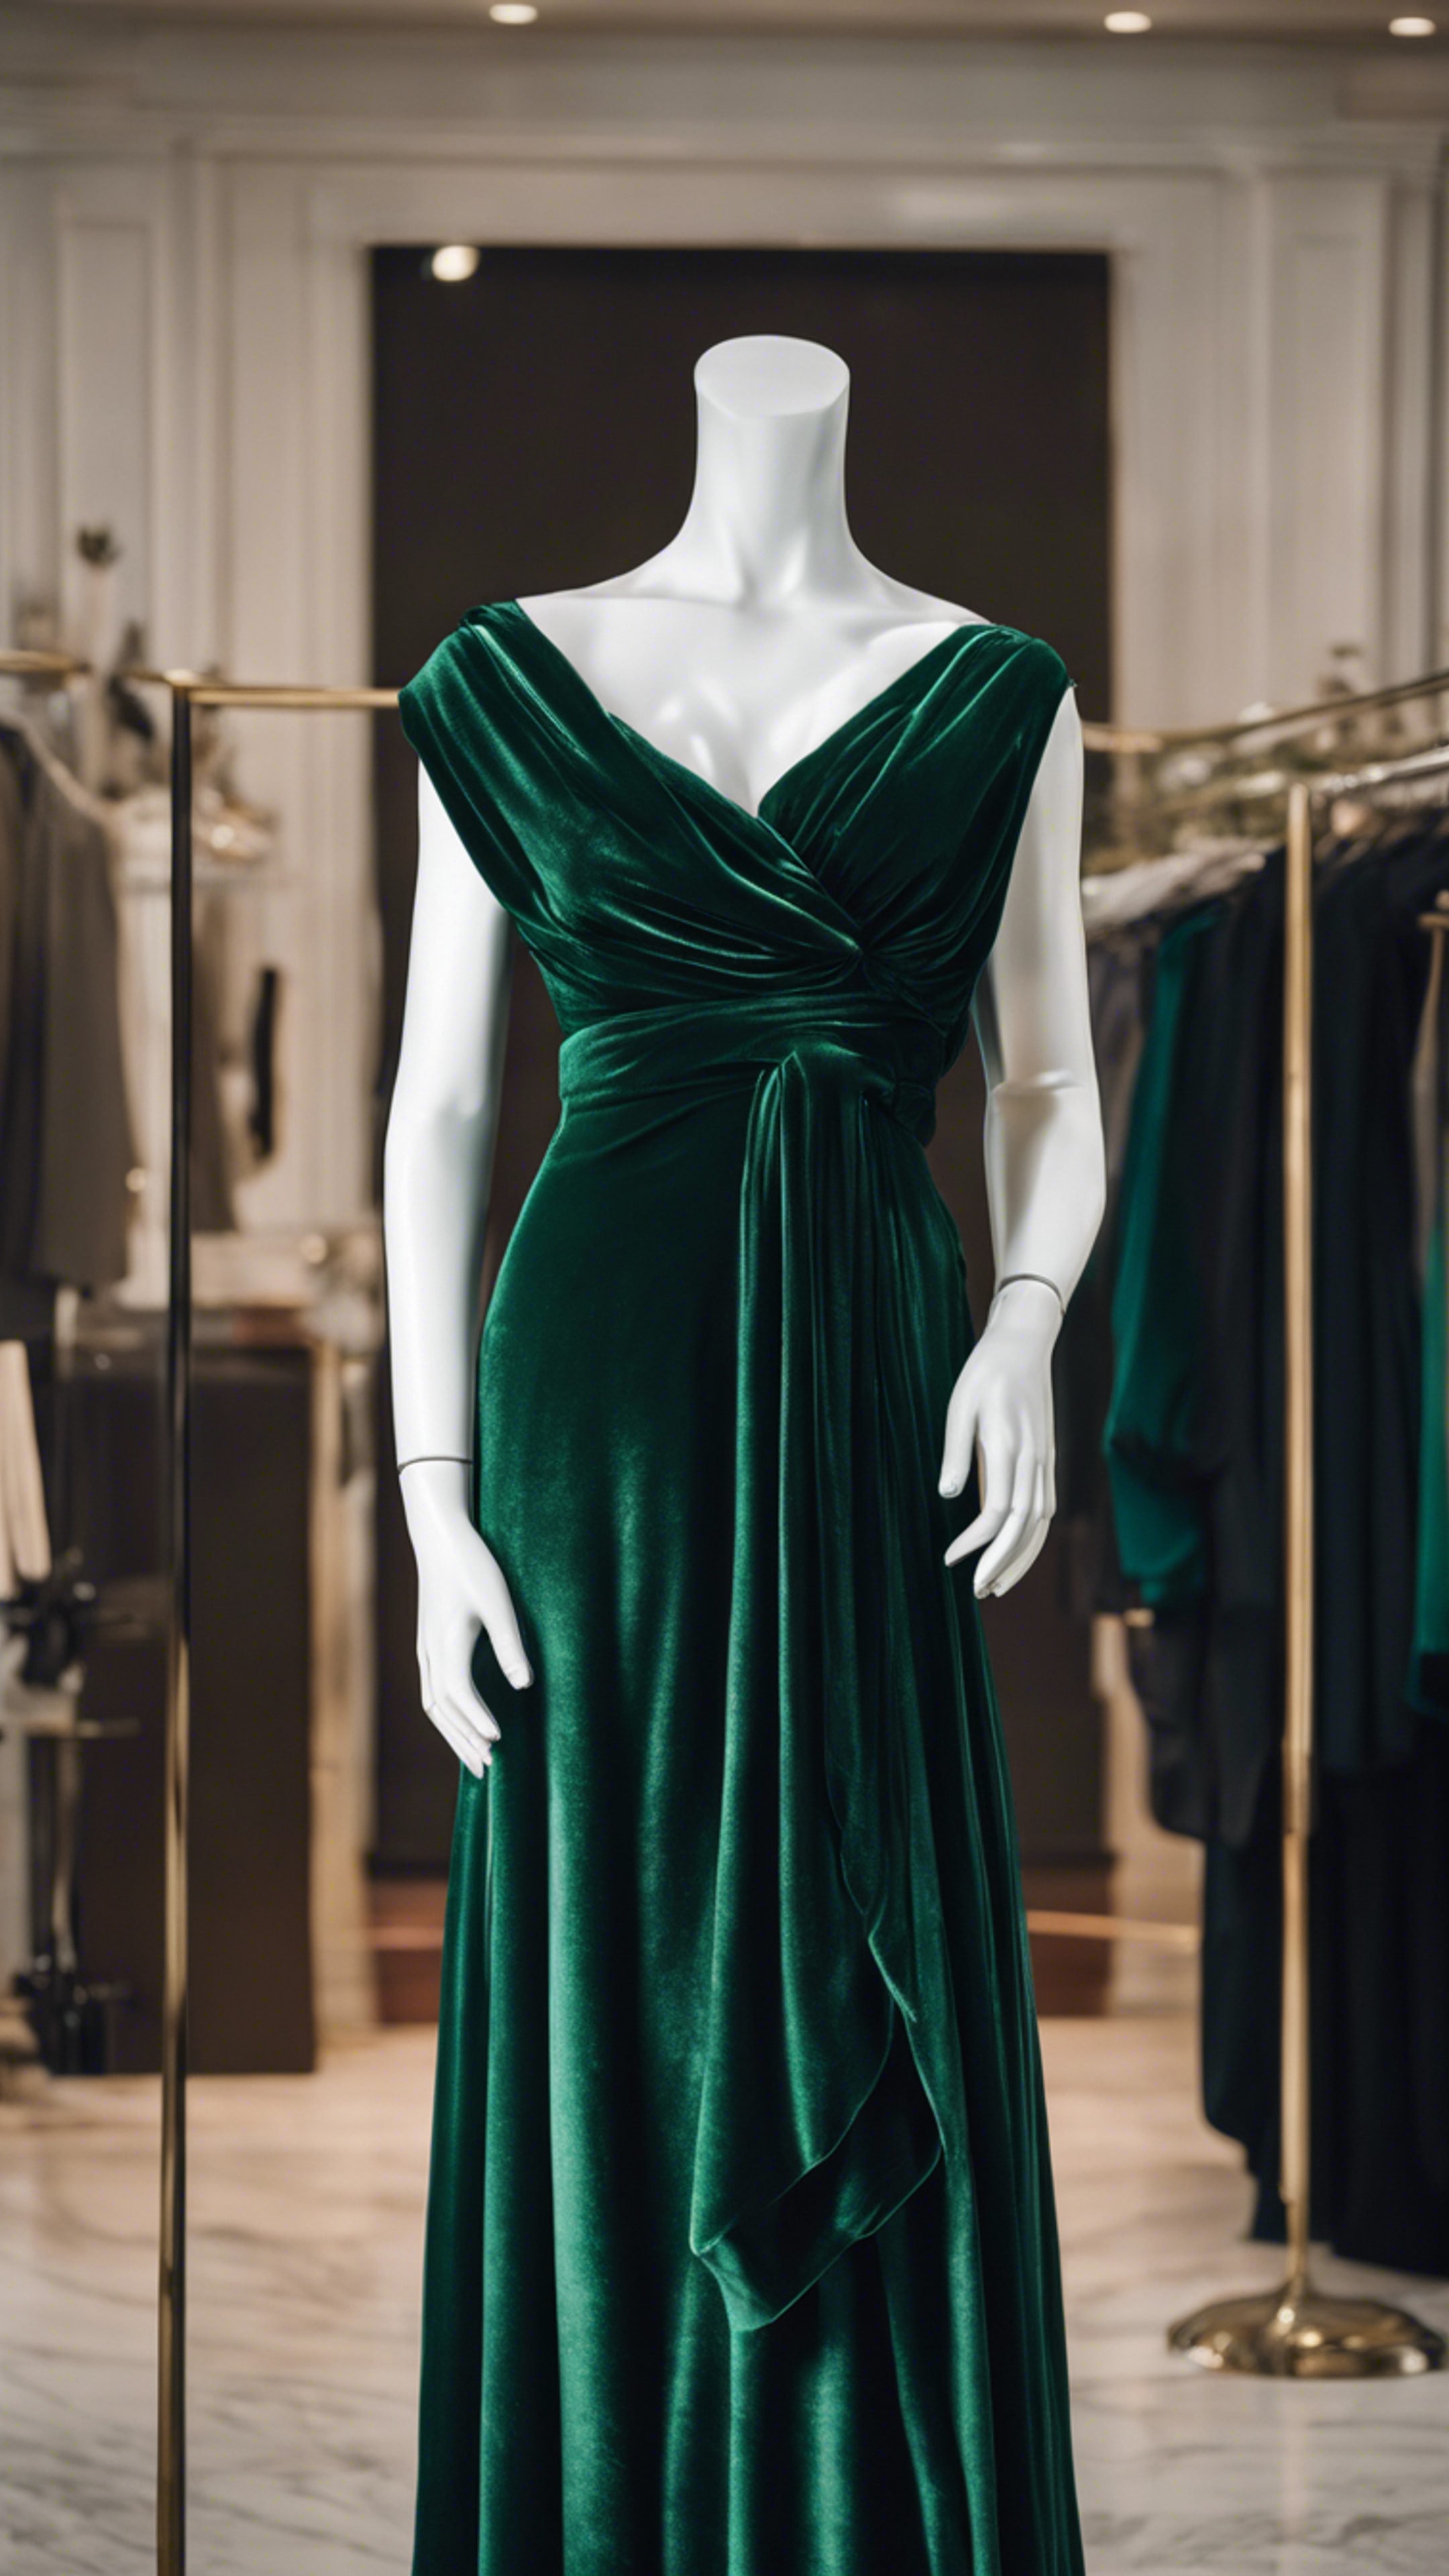 A classy dark green velvet dress draped on a mannequin. Kertas dinding[4958bfaa75d040bb9909]